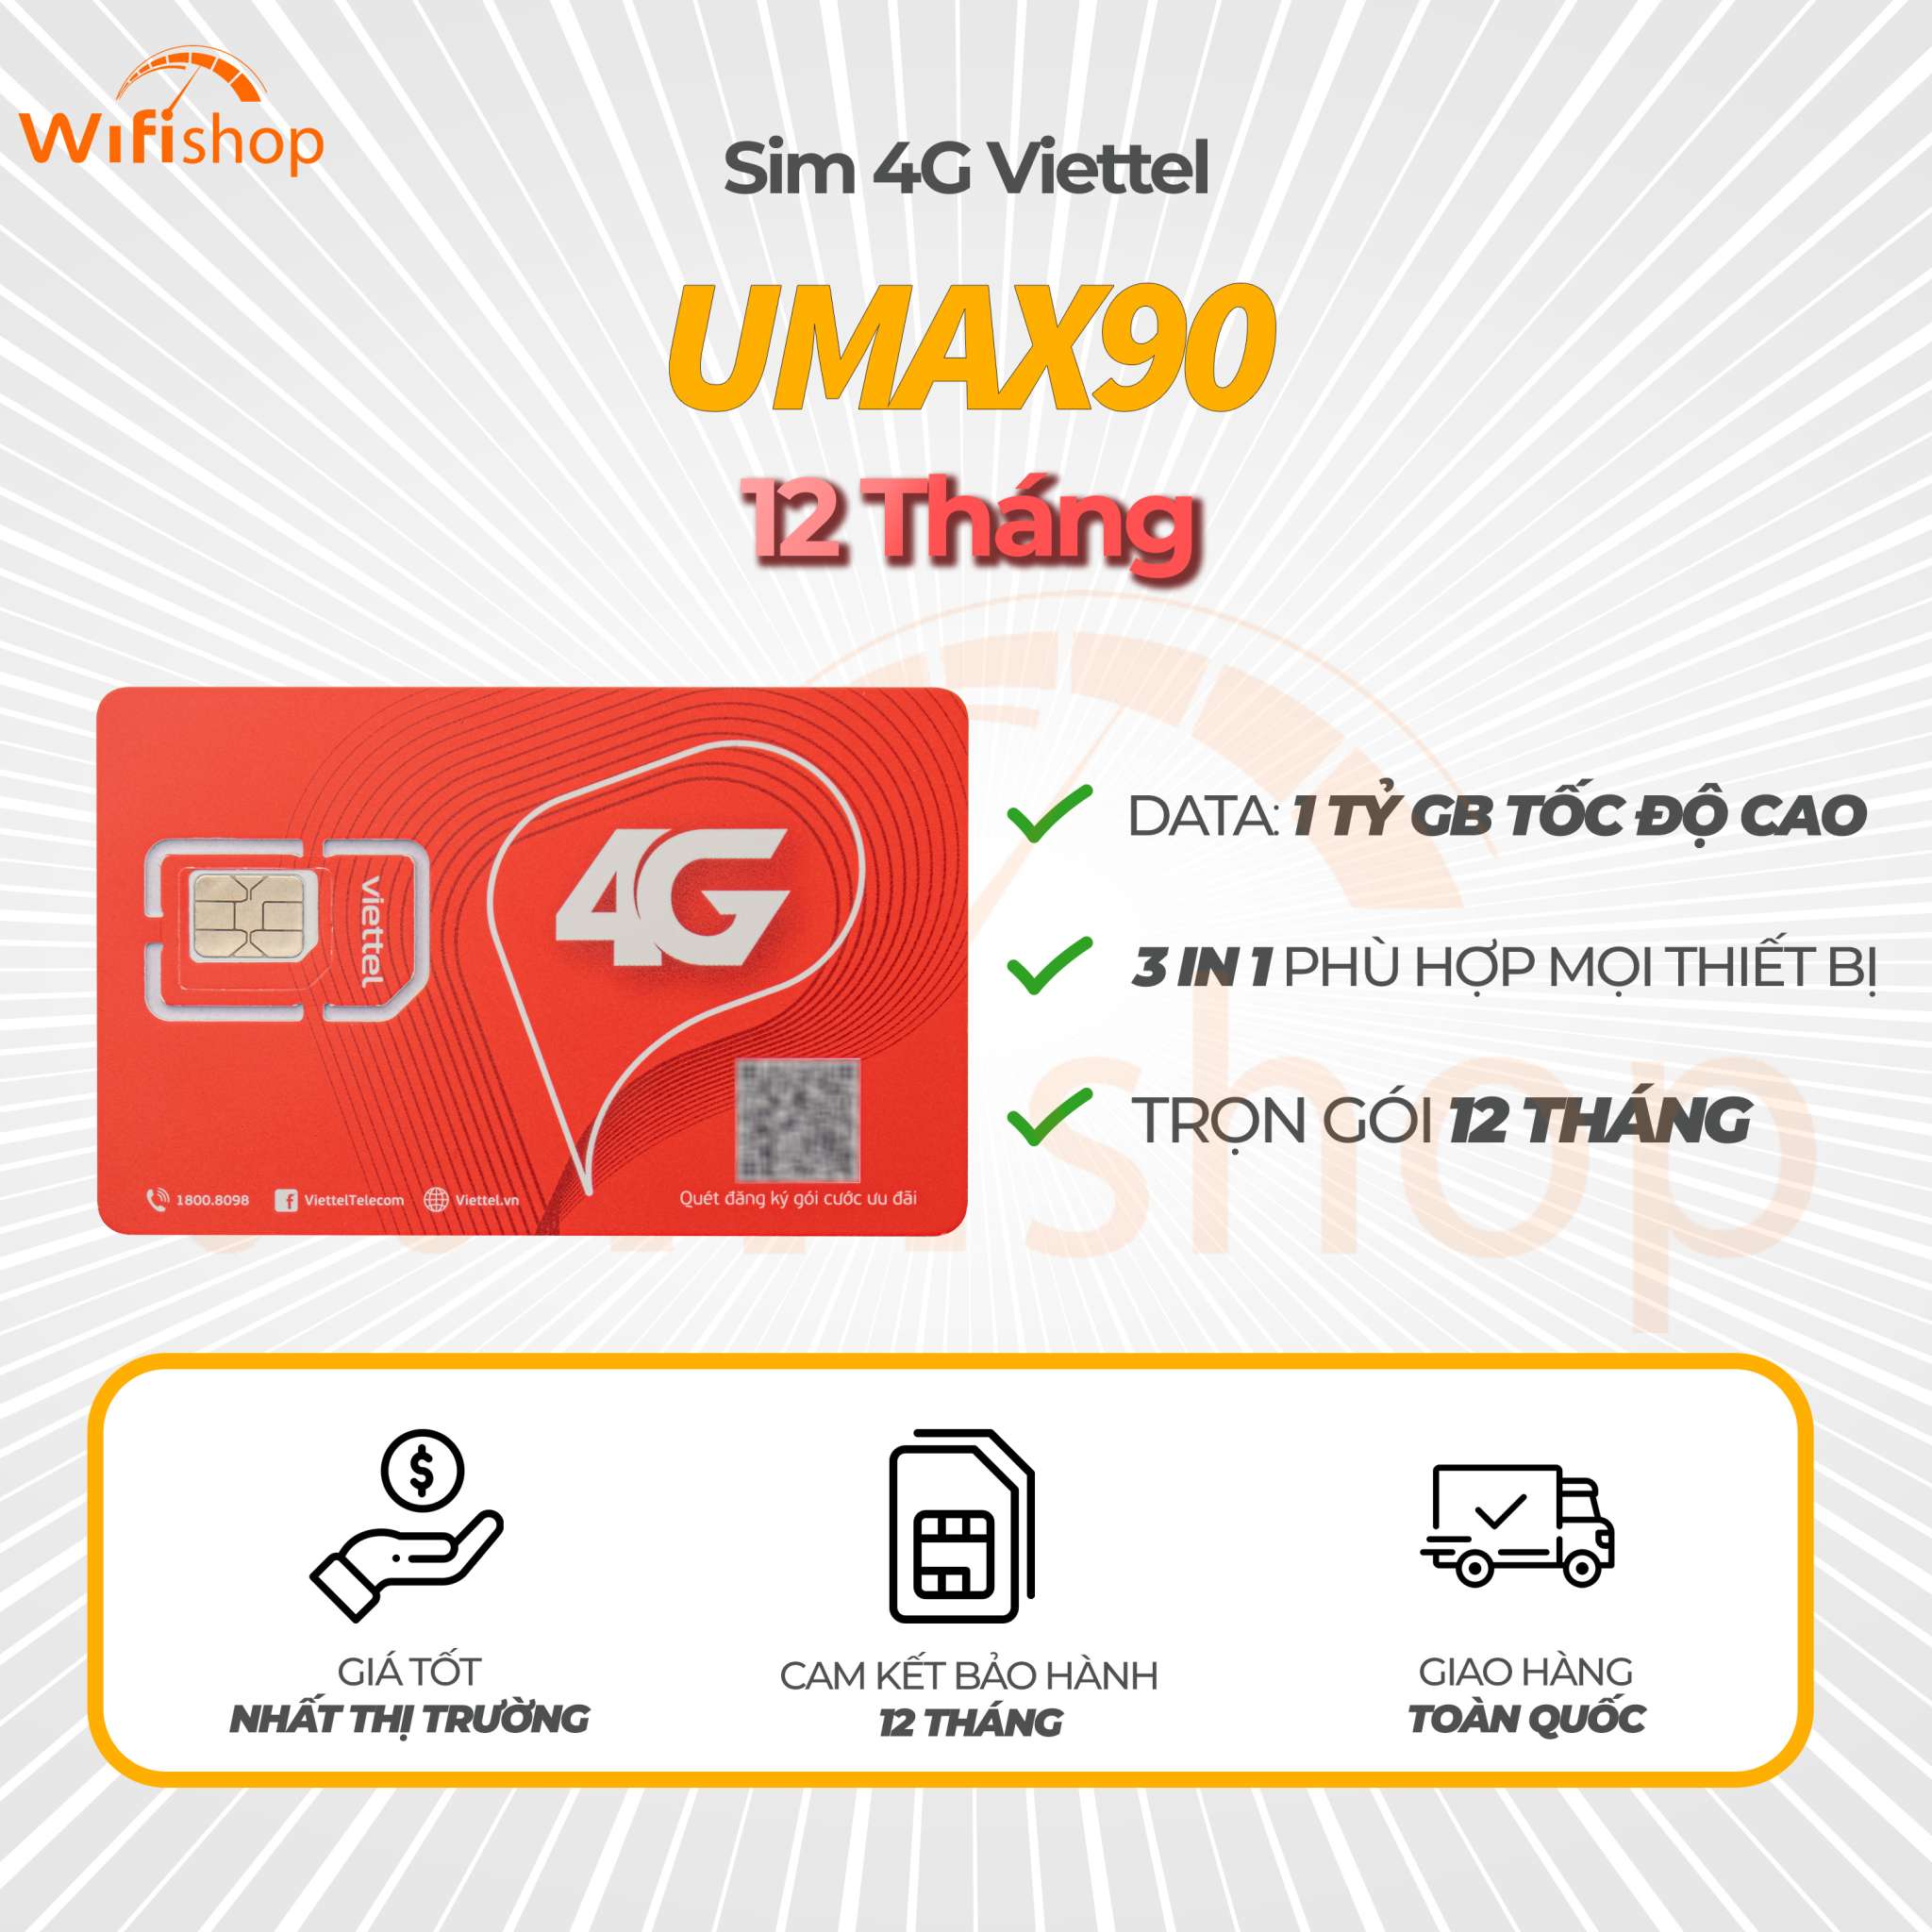 Sim Viettel 4G UMAX90 Data Không Giới Hạn - 1 tỷ GB/ tháng, trọn gói 12 tháng không nạp tiền